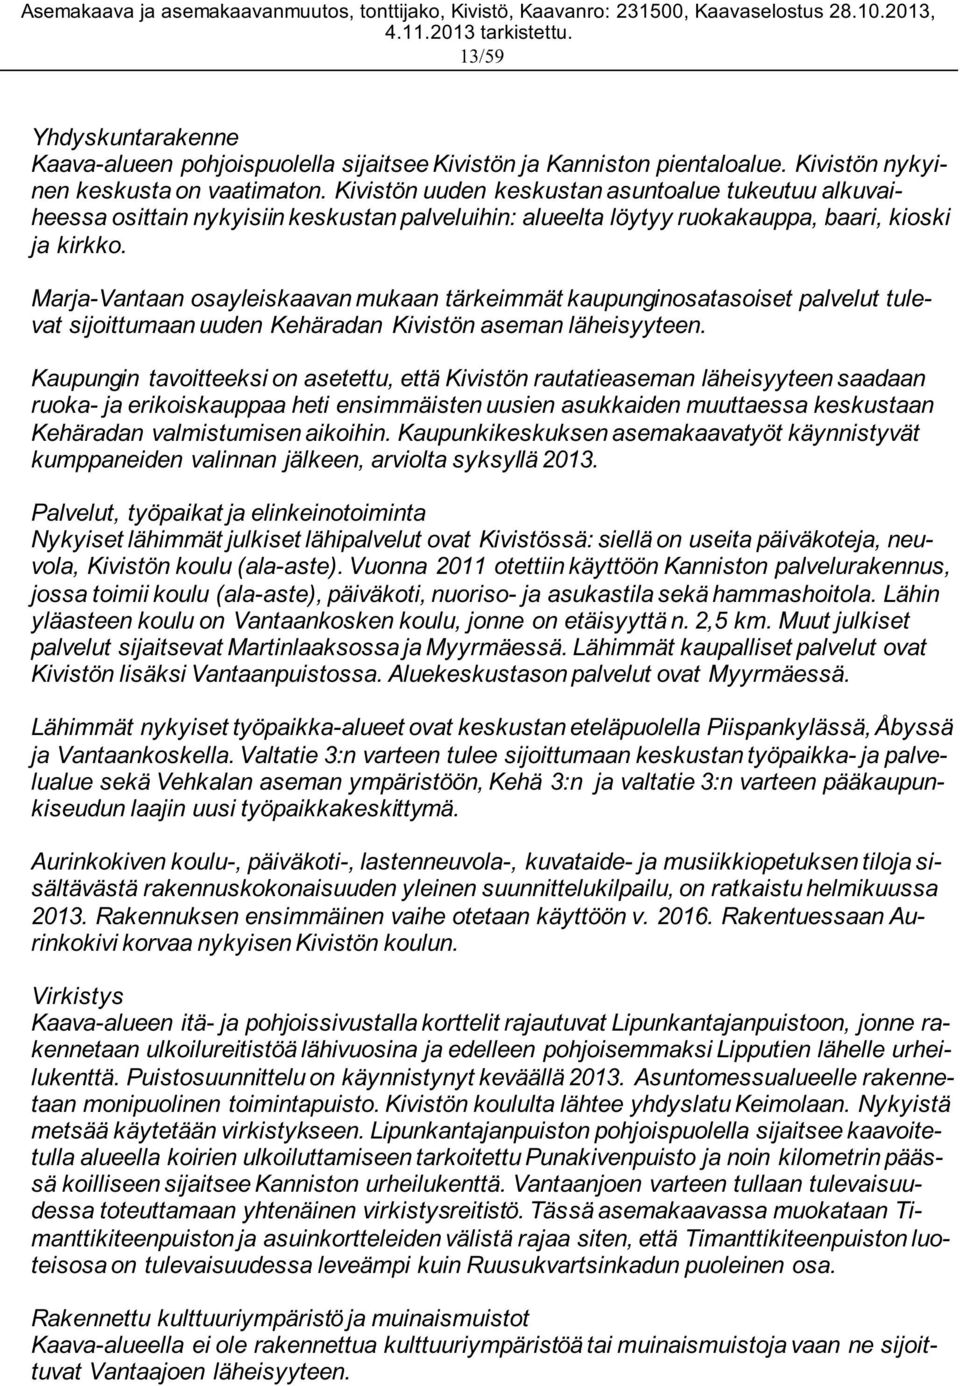 Marja-Vantaan osayleiskaavan mukaan tärkeimmät kaupunginosatasoiset palvelut tulevat sijoittumaan uuden Kehäradan Kivistön aseman läheisyyteen.